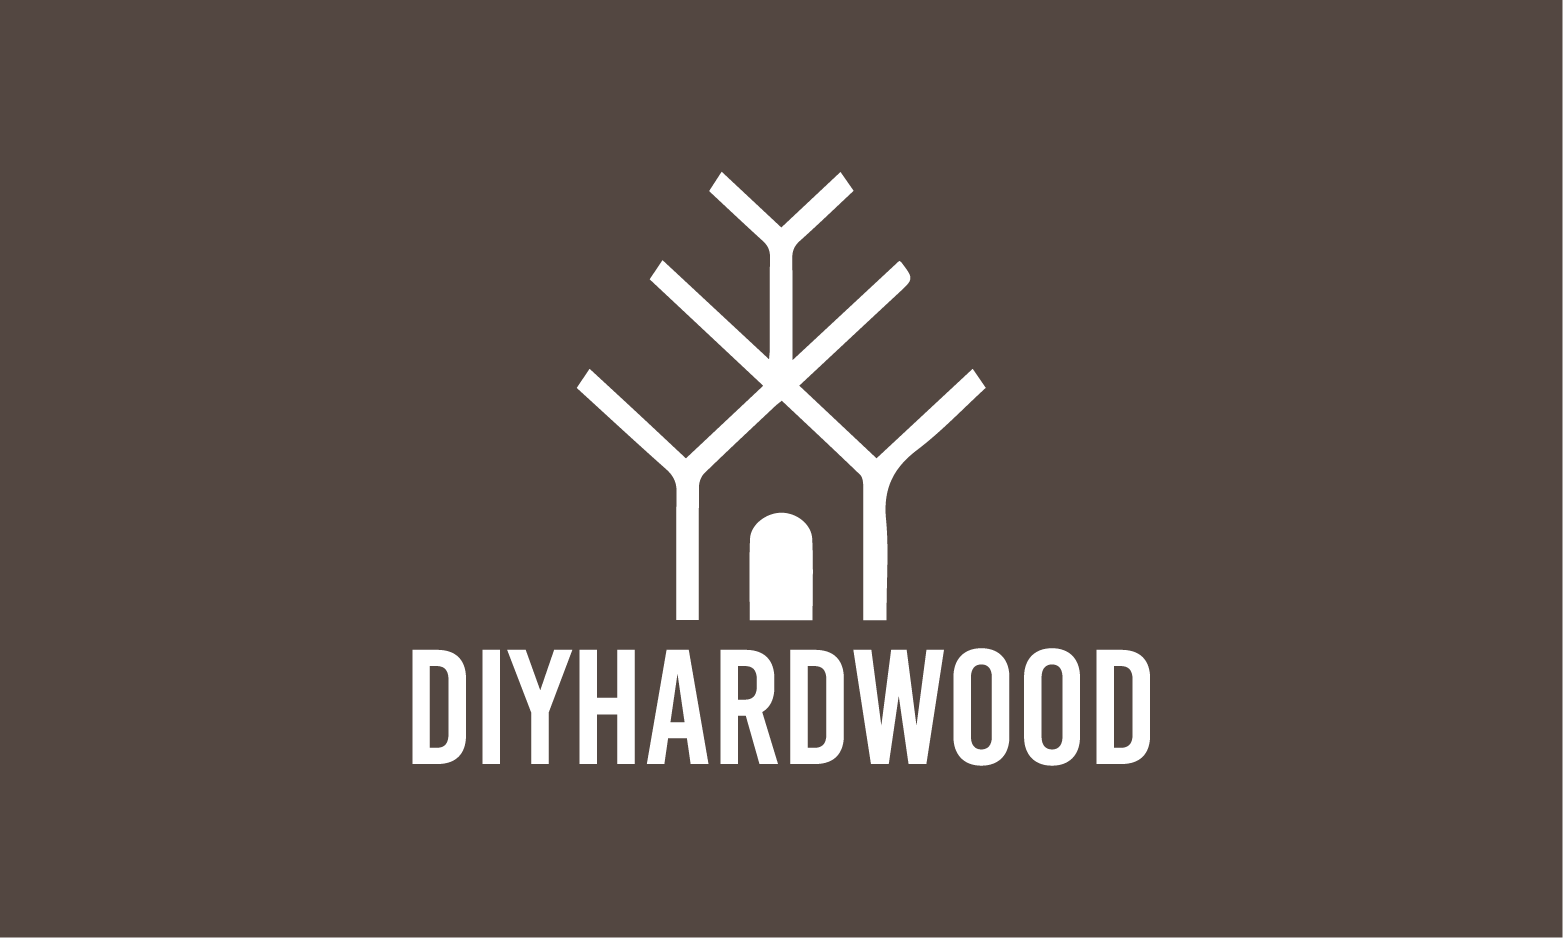 DIYHardwood.com - Creative brandable domain for sale